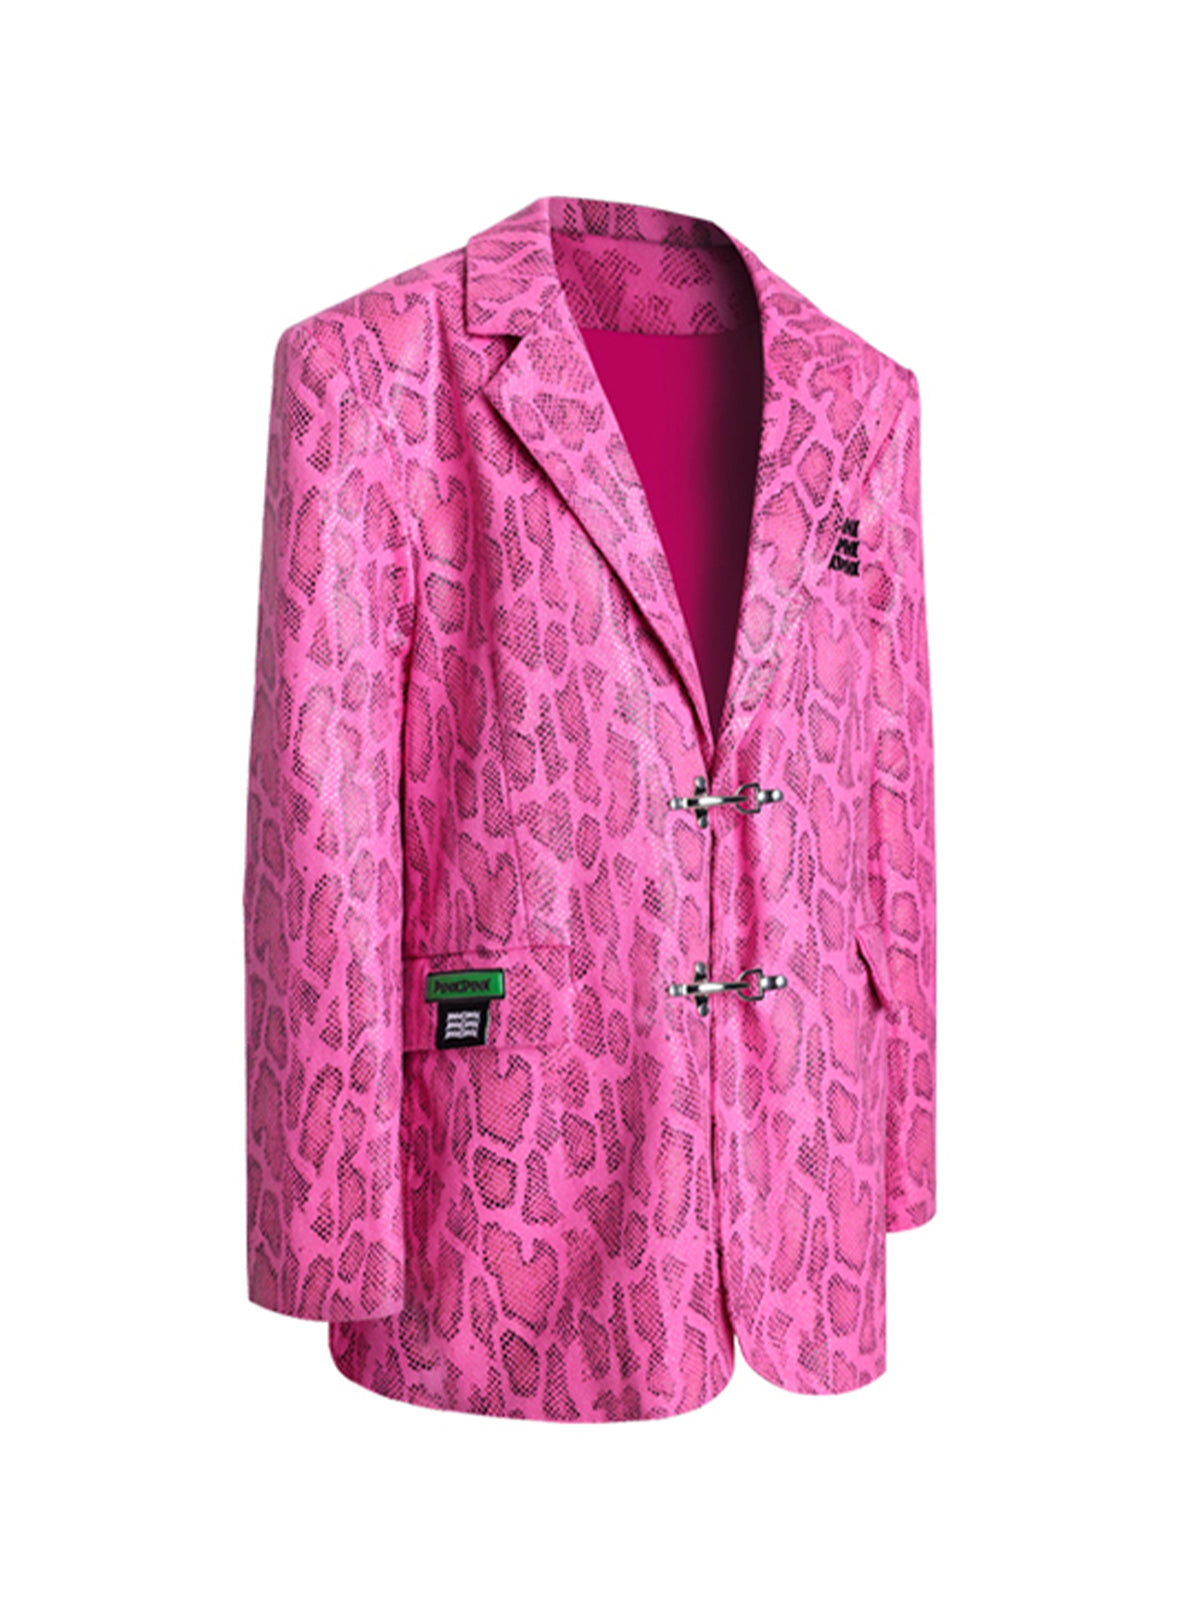 Pink branded jacket